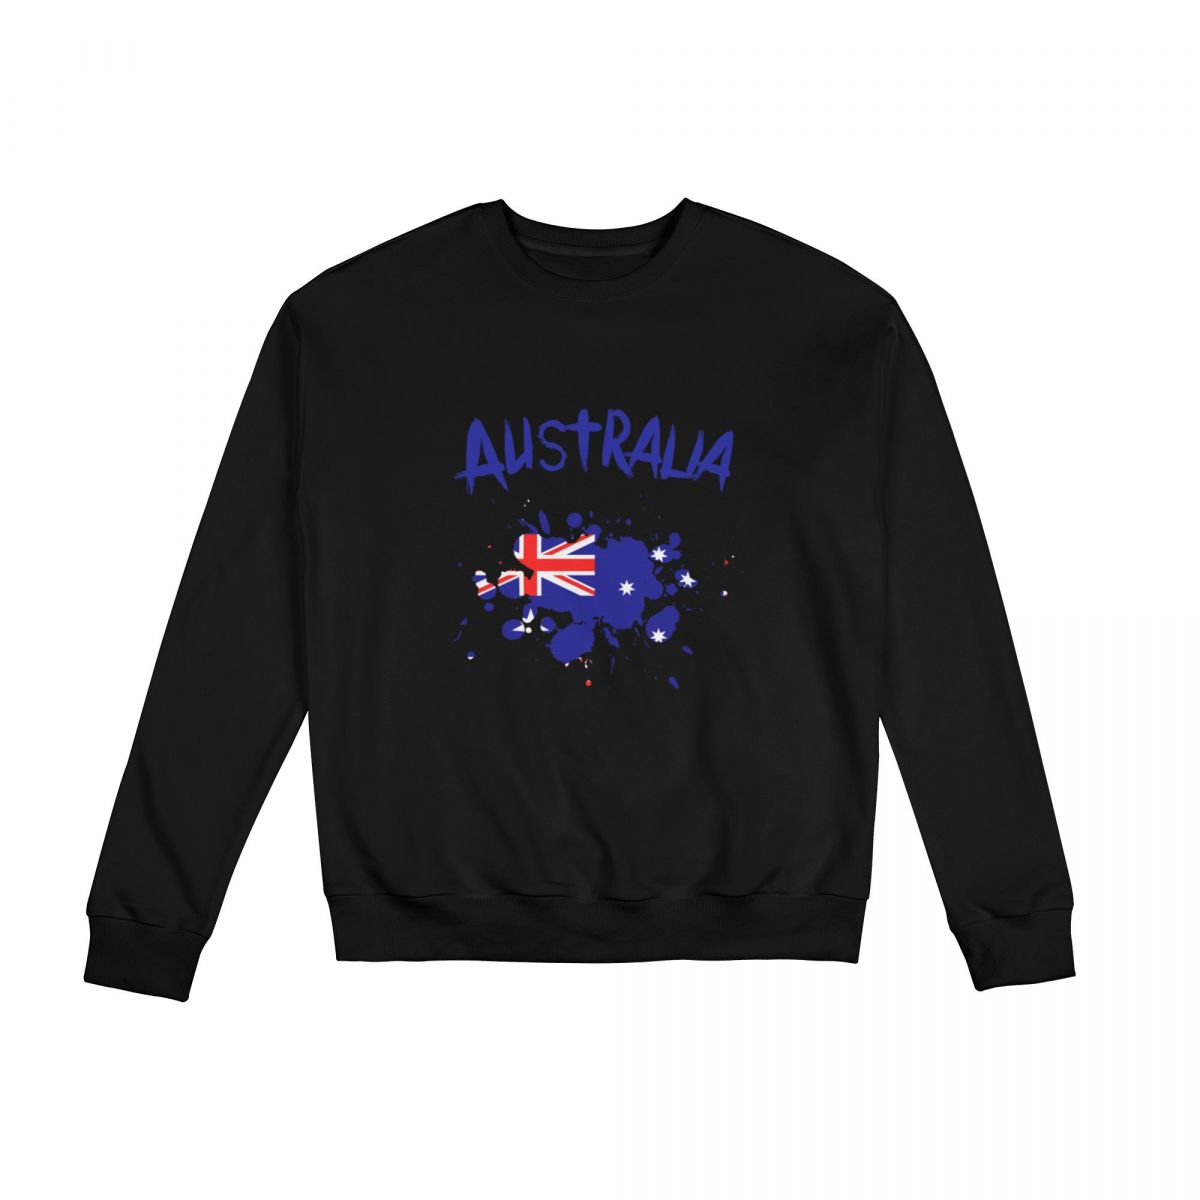 Australia Ink Spatter Crew Neck Sweatshirt